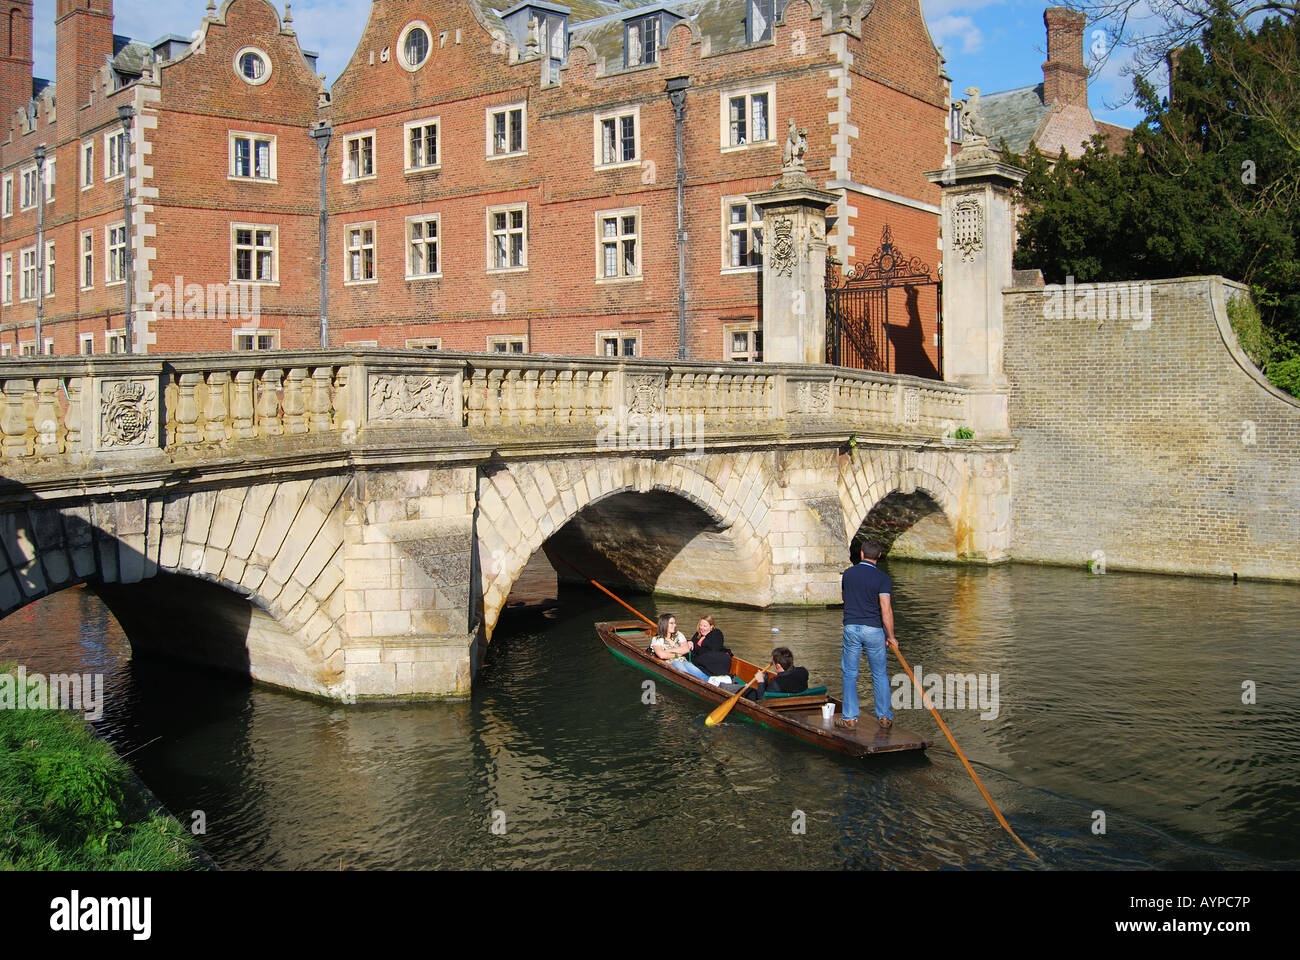 Barques sur la rivière Cam, St John's College, Cambridge, Cambridgeshire, Angleterre, Royaume-Uni Banque D'Images